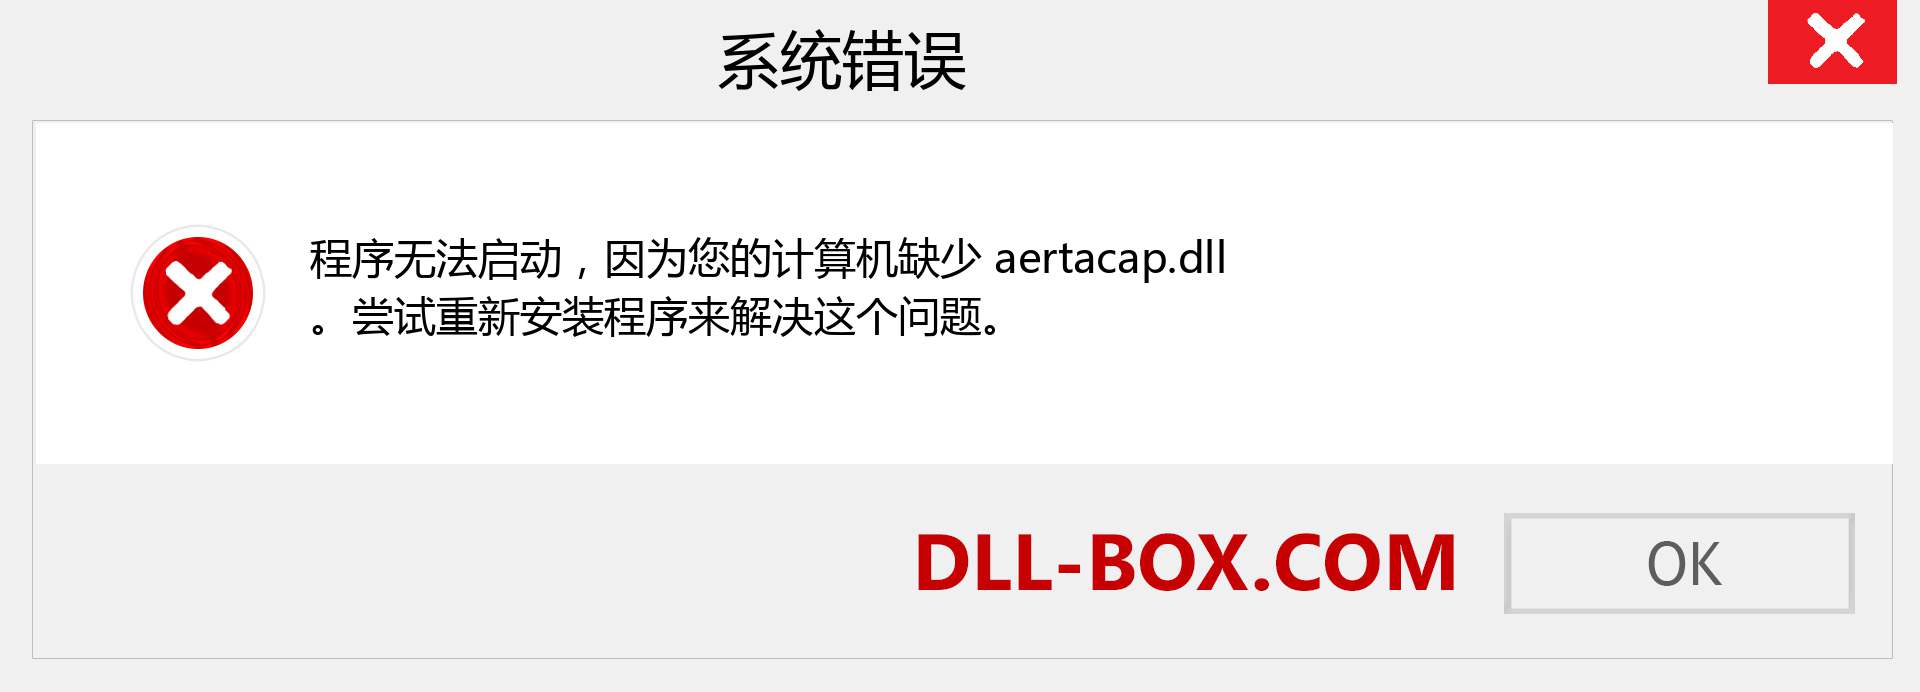 aertacap.dll 文件丢失？。 适用于 Windows 7、8、10 的下载 - 修复 Windows、照片、图像上的 aertacap dll 丢失错误